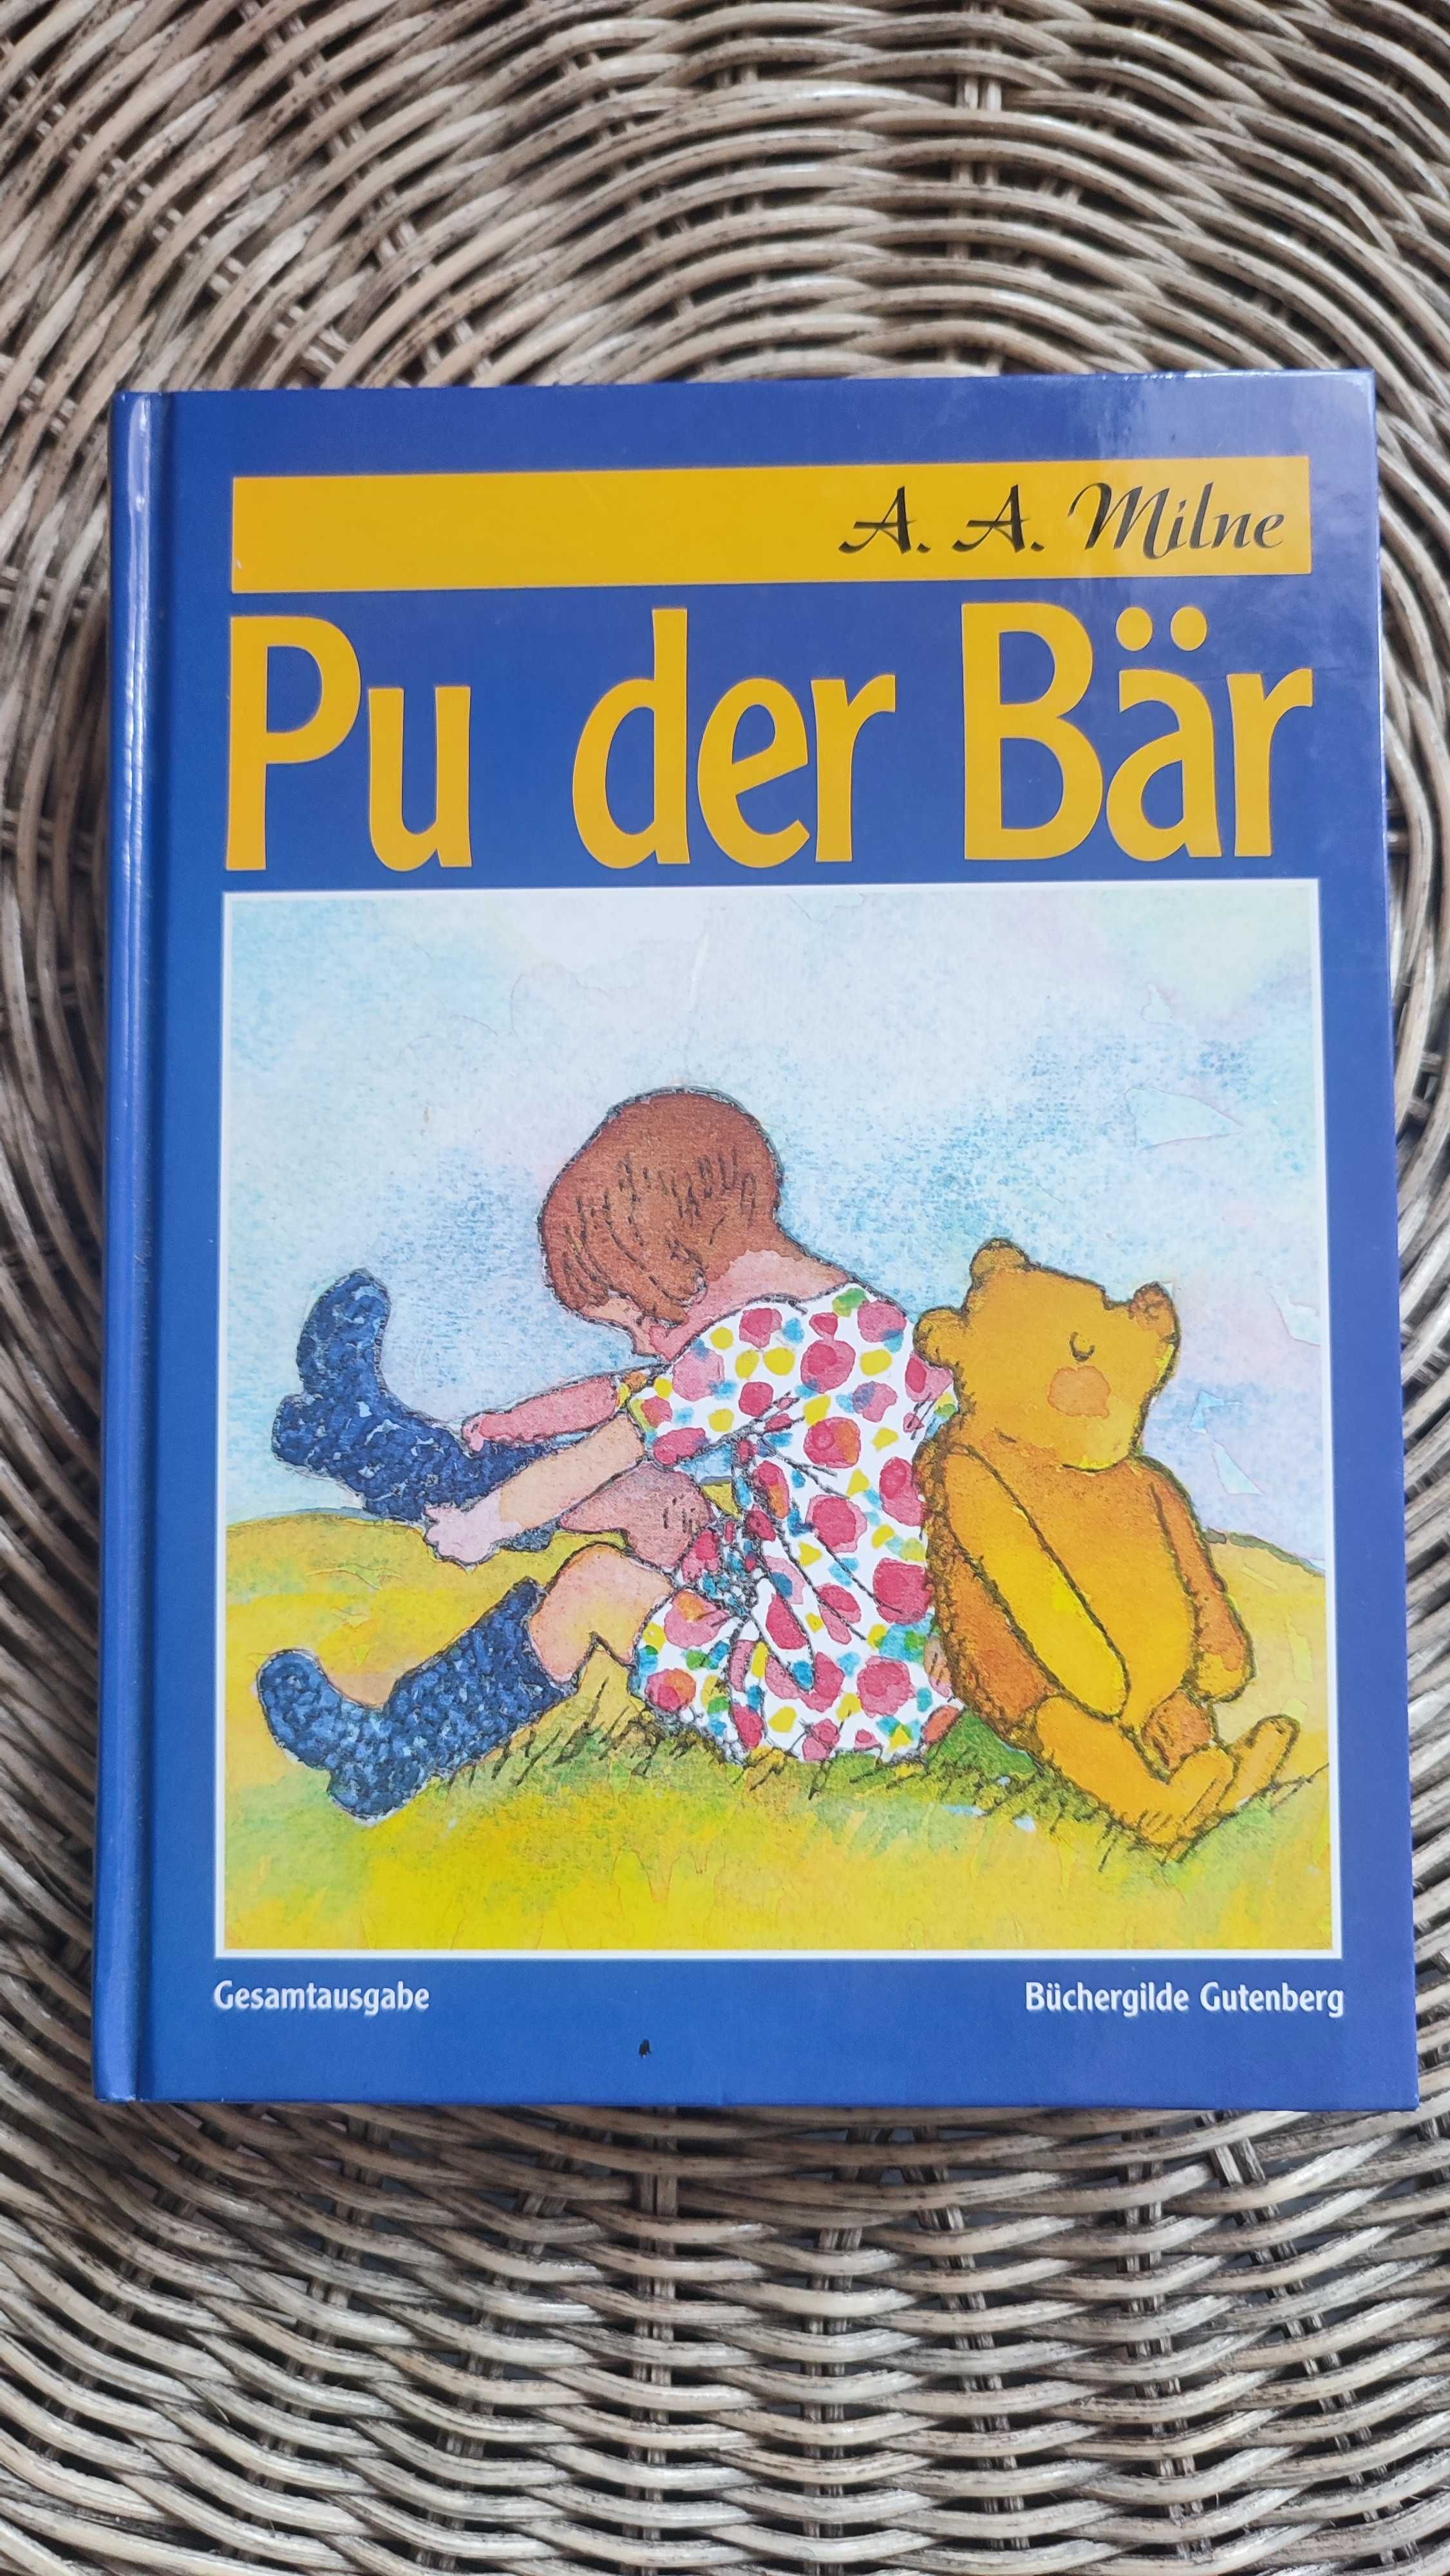 "Pu der Bär" Milne "Винни пух" Милн на немецком языке